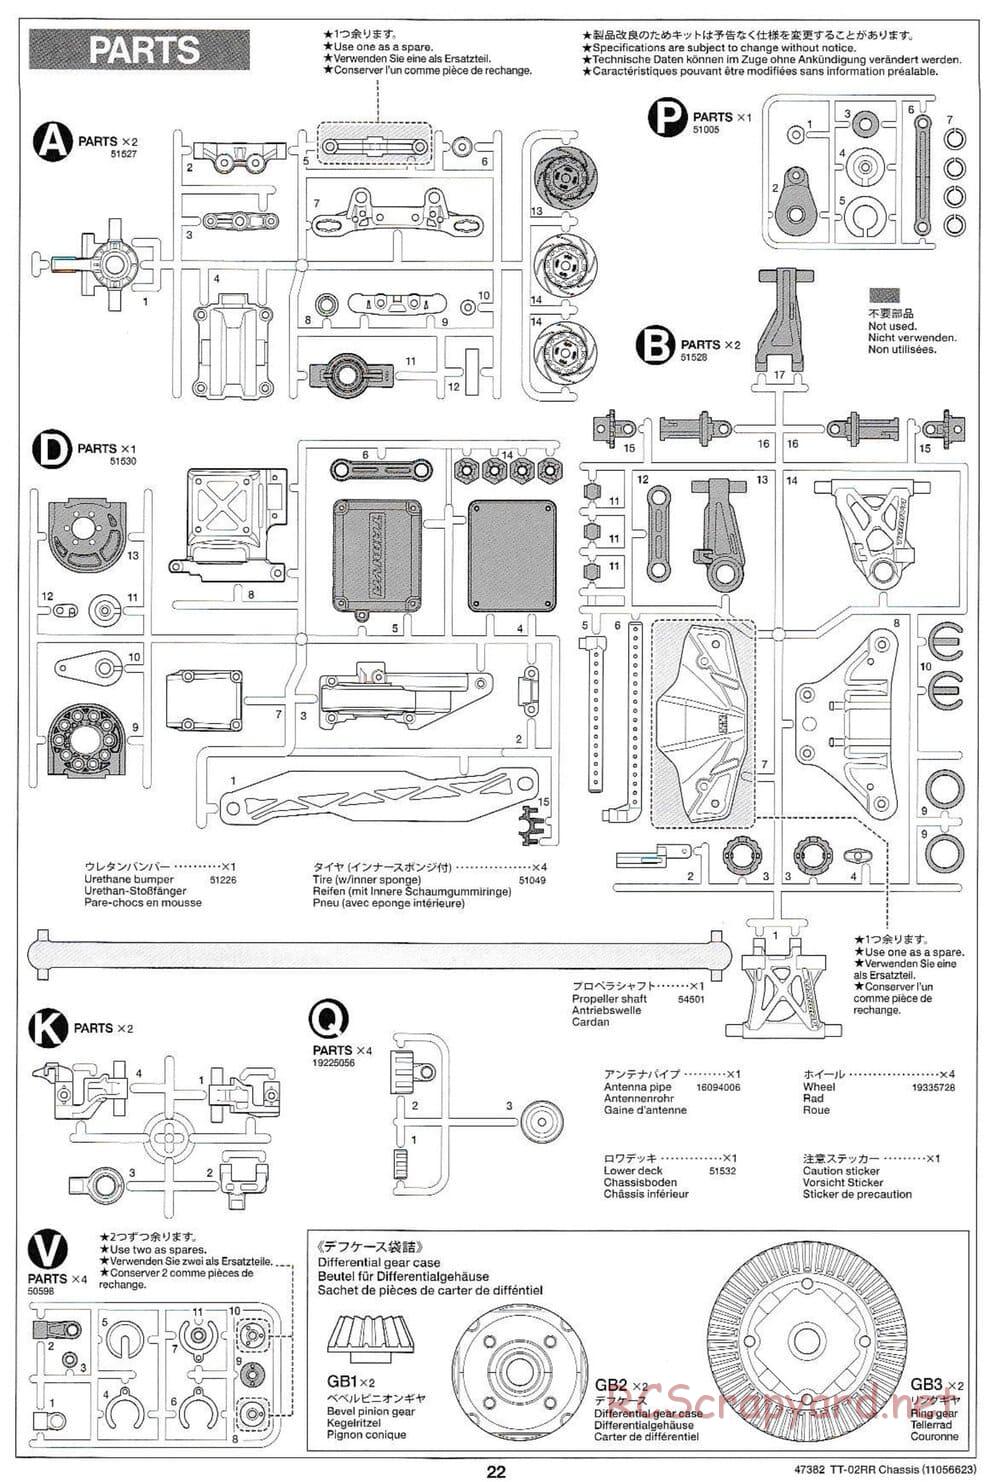 Tamiya - TT-02RR Chassis - Manual - Page 22